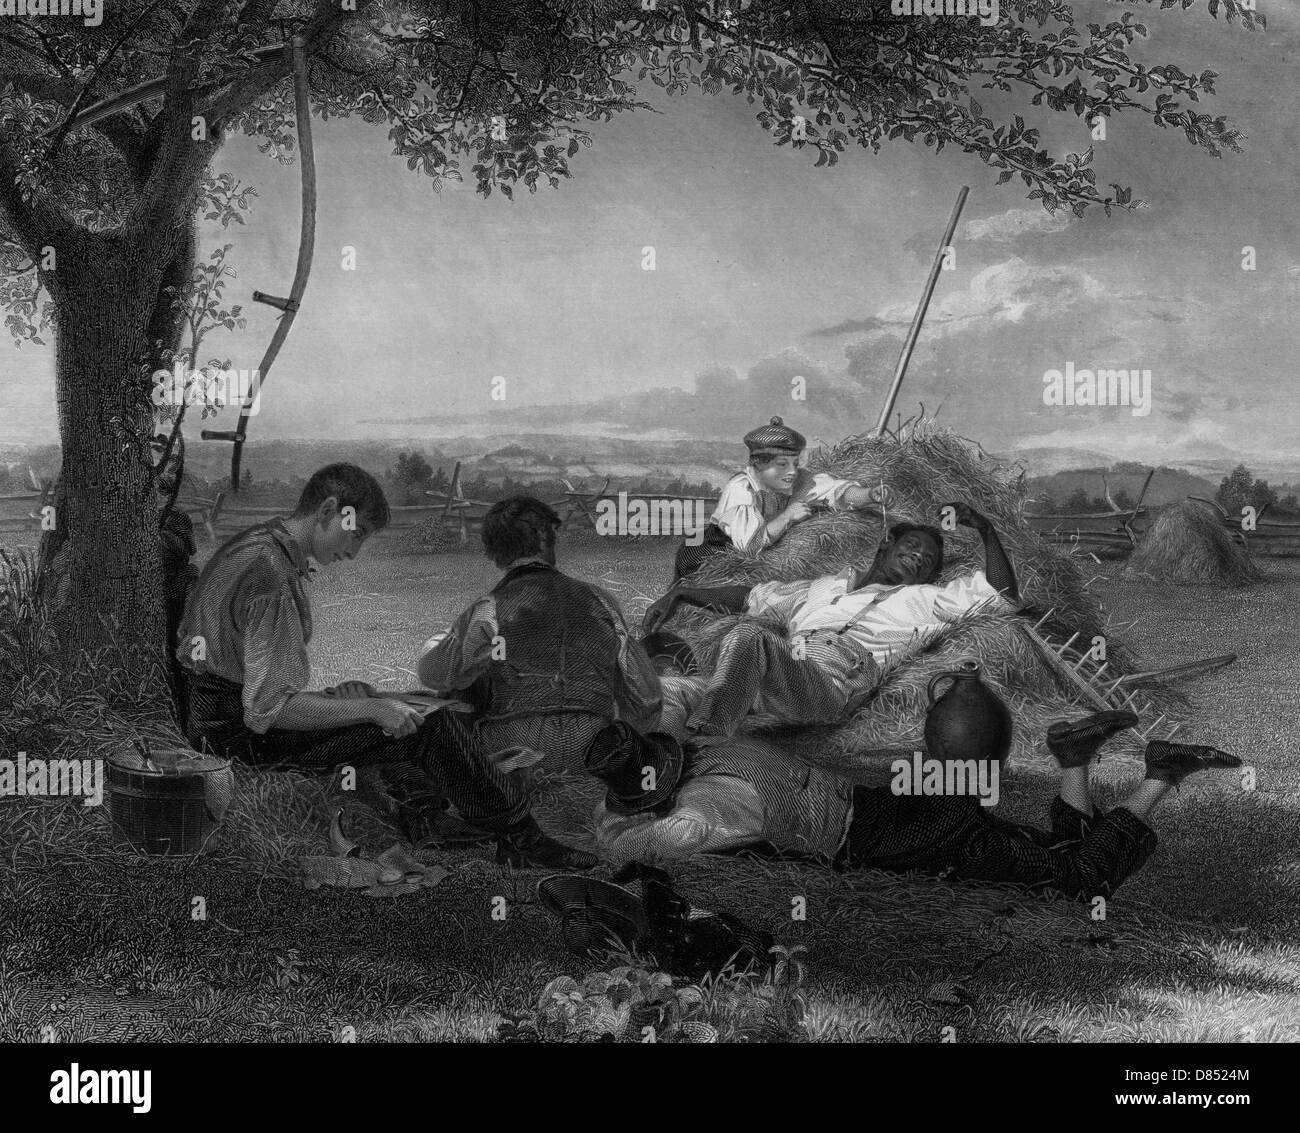 Bauern Nooning - Arbeiter ausruhen im Schatten eines Baumes, ein Mann ist schärfen ein Werkzeug, ein afrikanischer amerikanischer Mann liegend auf einem Stapel von Heu, ein kleiner Junge ist beugte sich über den Stapel des Mannes Ohr mit einem Stück Stroh kitzeln, verschiedenen Heu erntende Werkzeuge sind vorhanden; ein Split-Zaun und Heuhaufen sind sichtbar im Hintergrund. 1843 Stockfoto